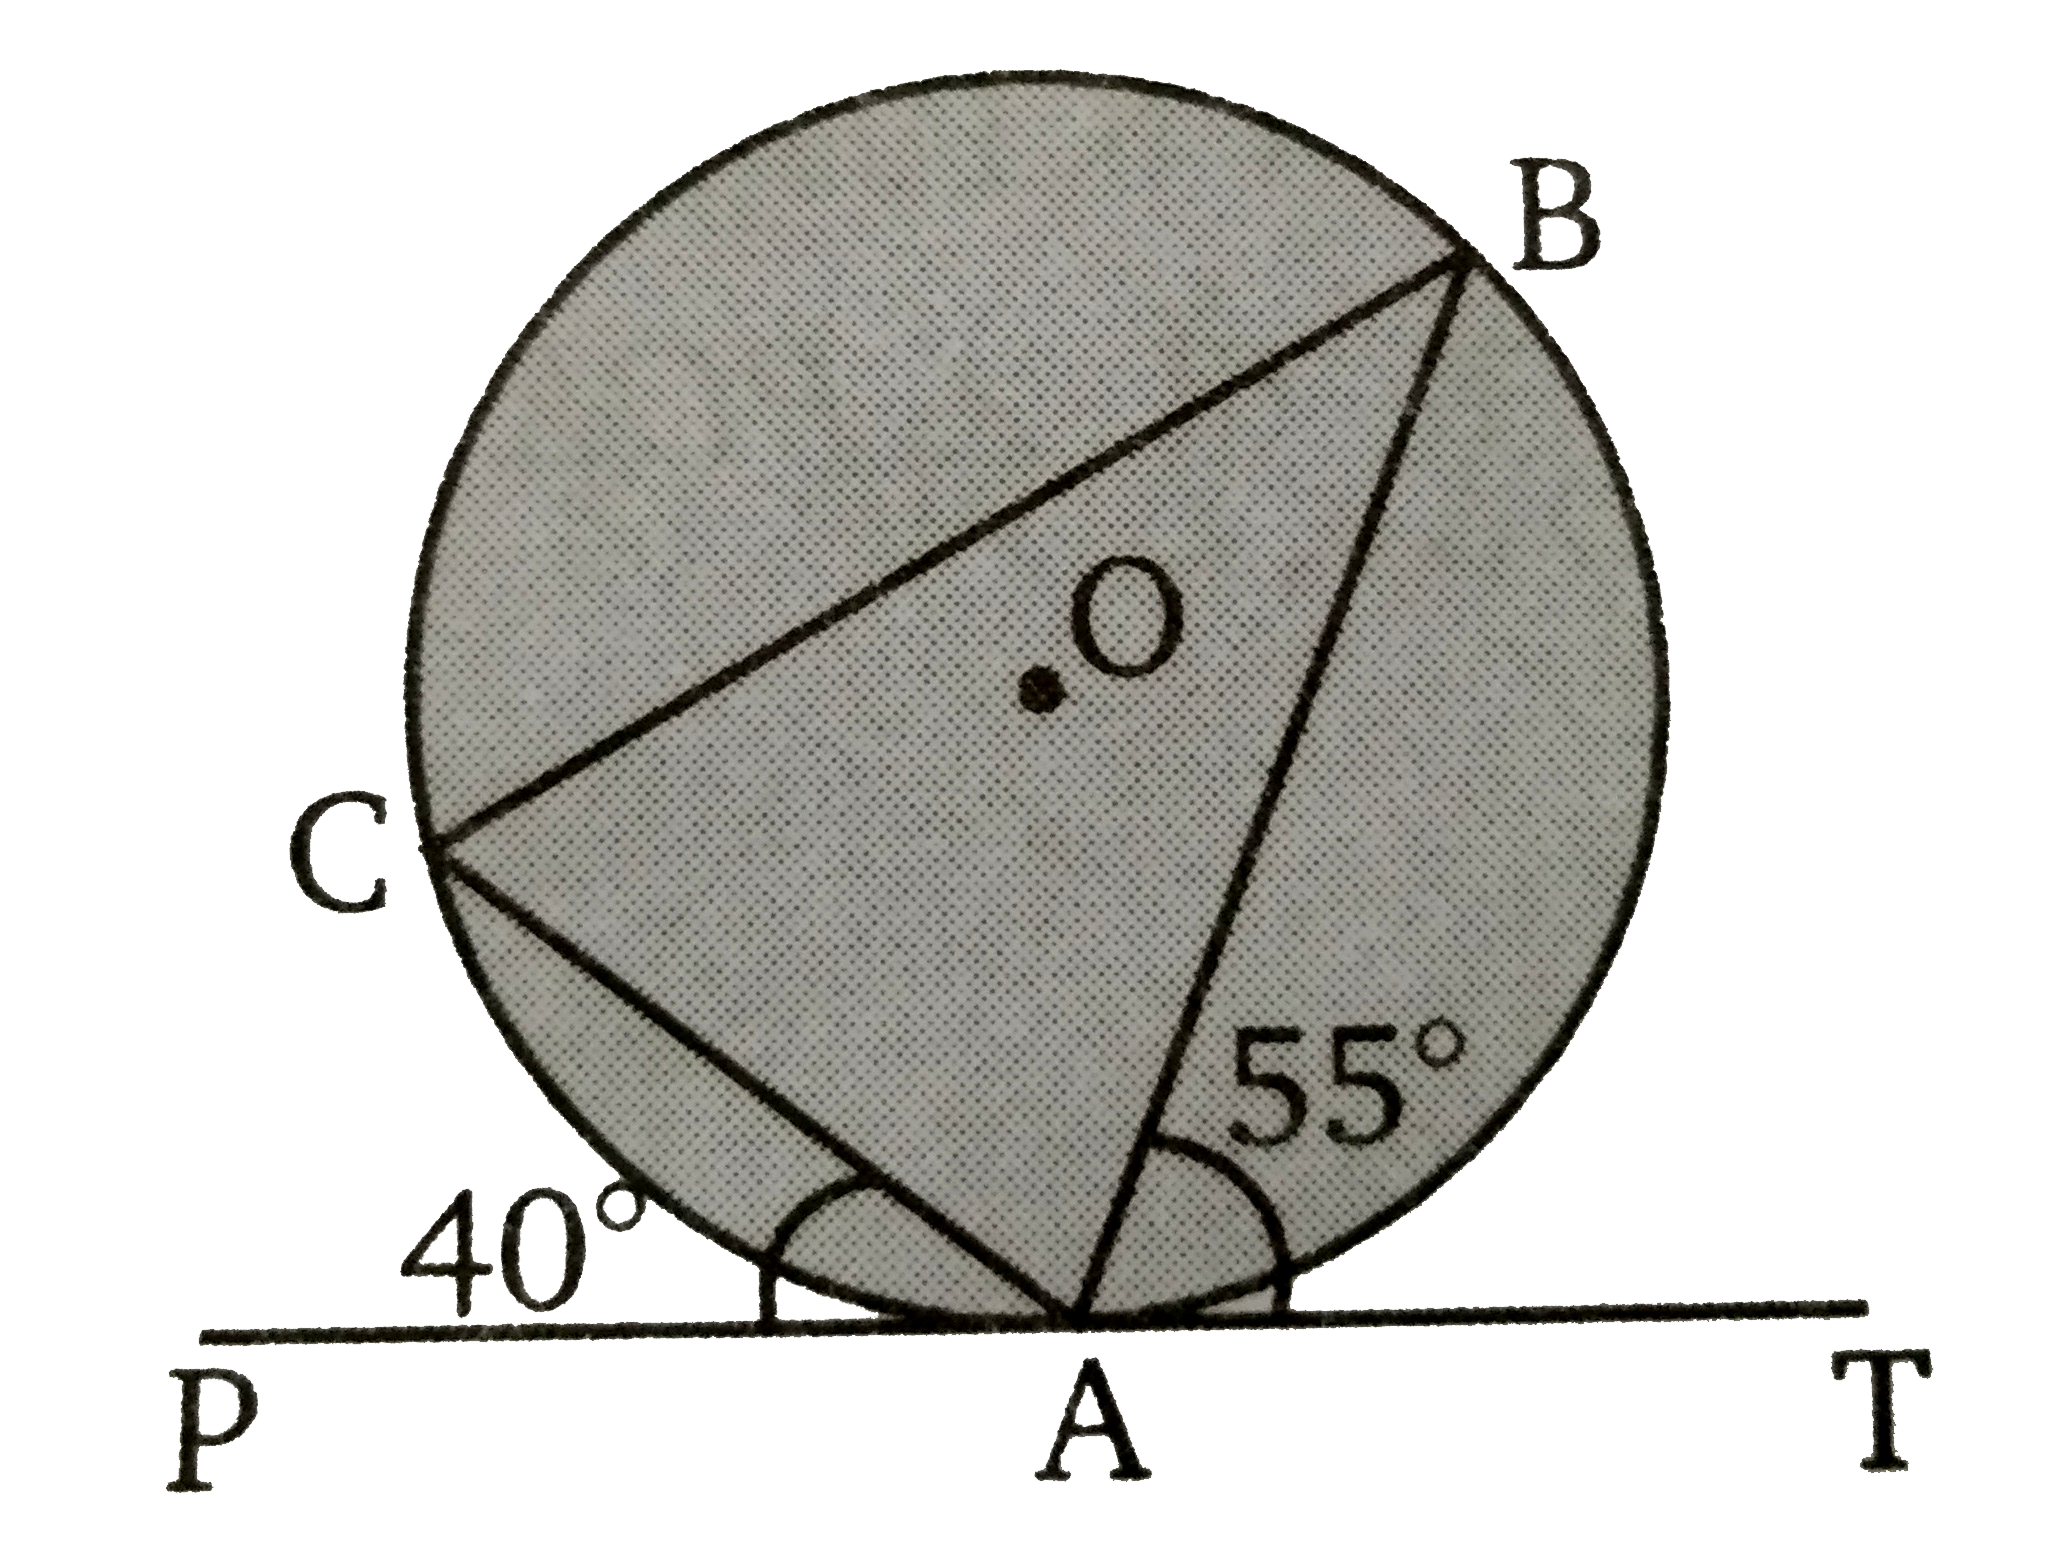 दिये गये चित्र में, एक रेखा PAT  वृत्त को बिन्दु A पर स्पर्श करती है। यदि anglePAC = 40^(@)  तथा angle BAT = 55^(@)  तब  angle CAB का मान ज्ञात कीजिए ।